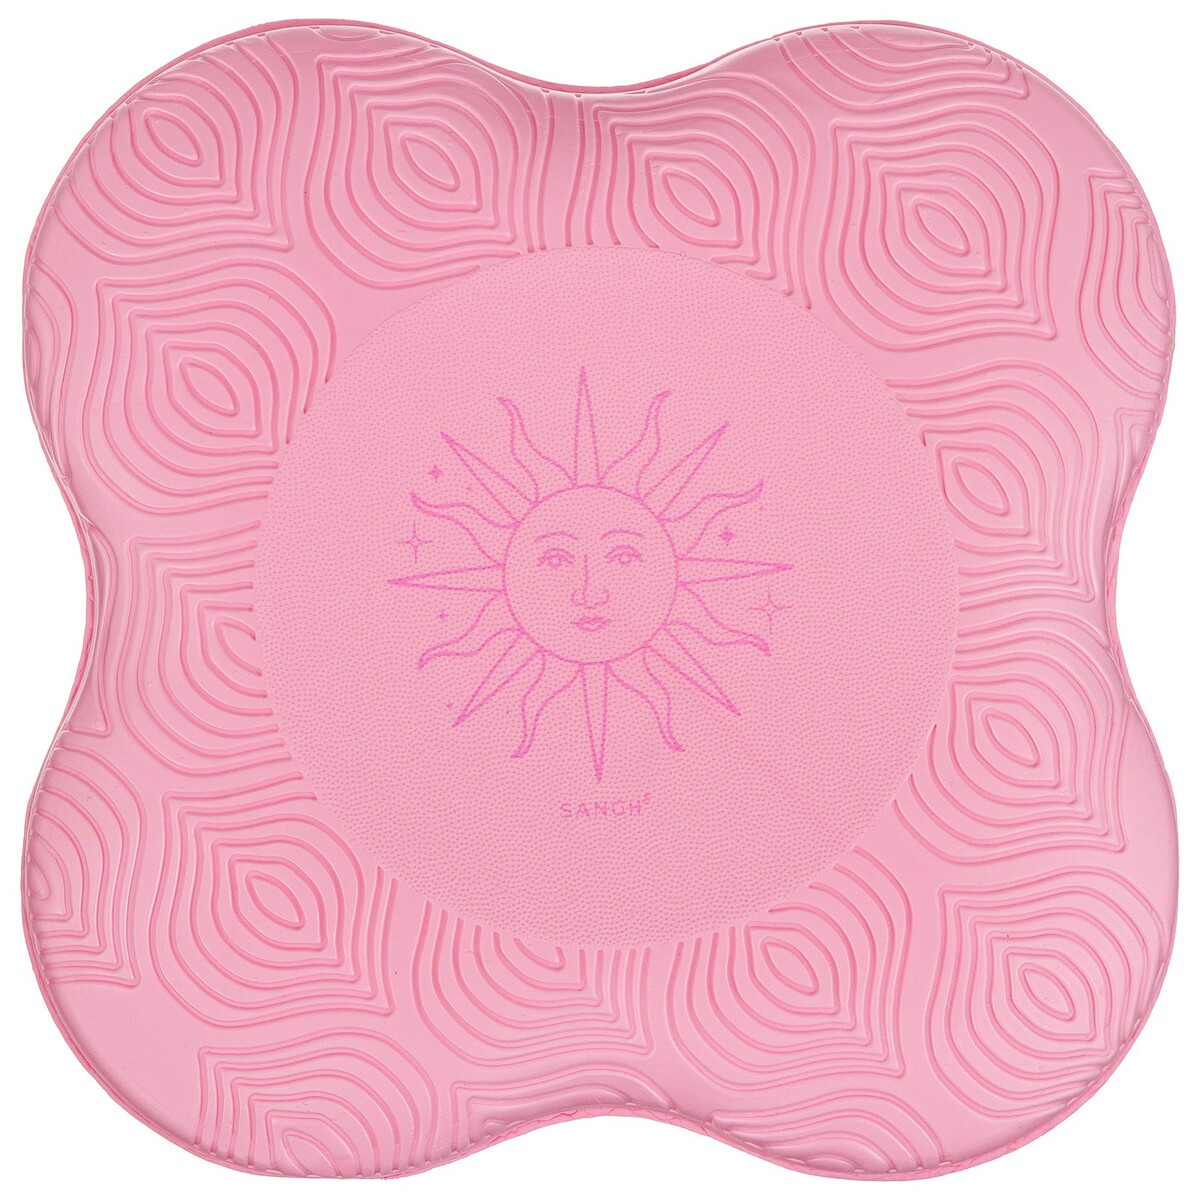 Коврик под колени для йоги sangh sun, 20х20 см, цвет розовый коврик гимнастический airex fitline140pi розовый